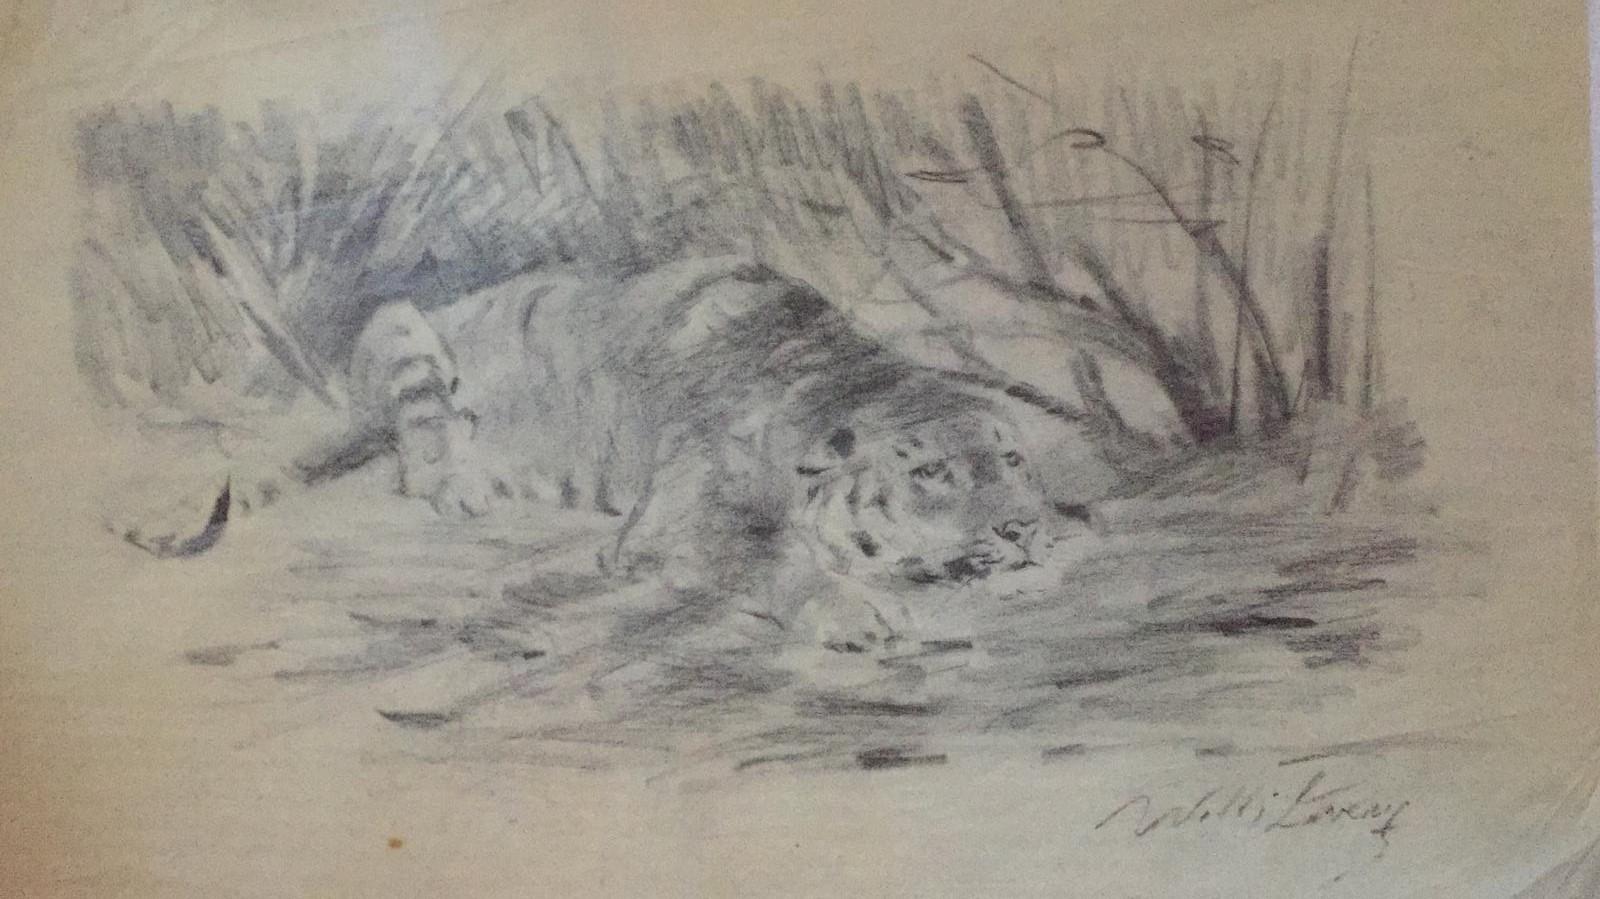 Tigre au repos est un beau dessin original sur papier à dessin réalisé au XXe siècle par l'artiste allemand Wilhelm Lorenz, également connu sous le nom de Willi Lorenz. 

Il s'agit d'une étude préparatoire représentant un tigre au repos, réalisée